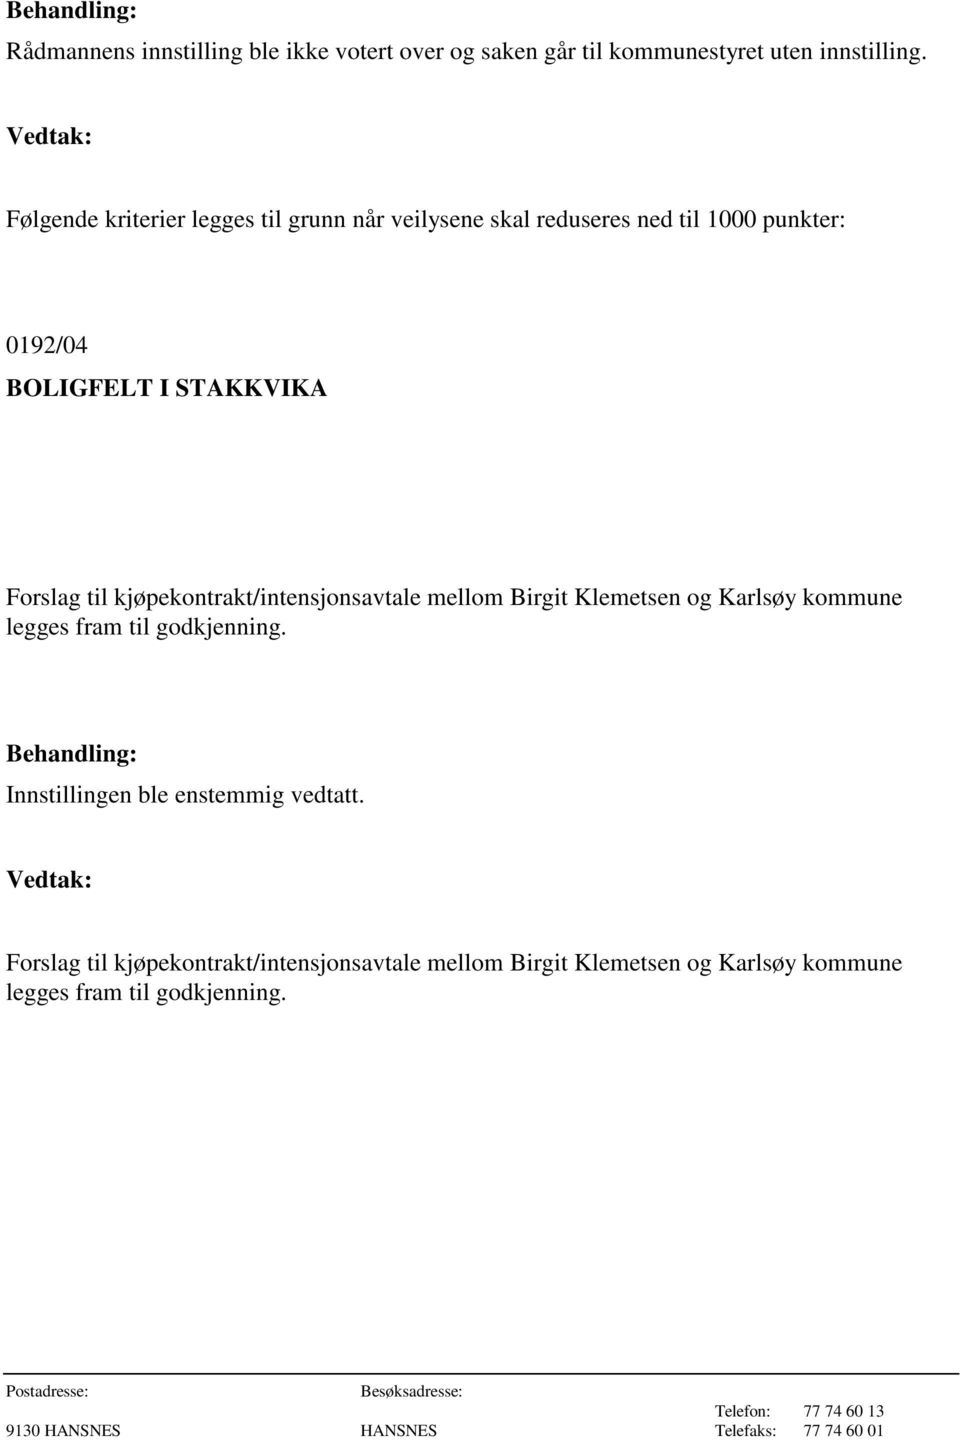 Forslag til kjøpekontrakt/intensjonsavtale mellom Birgit Klemetsen og Karlsøy kommune legges fram til godkjenning.